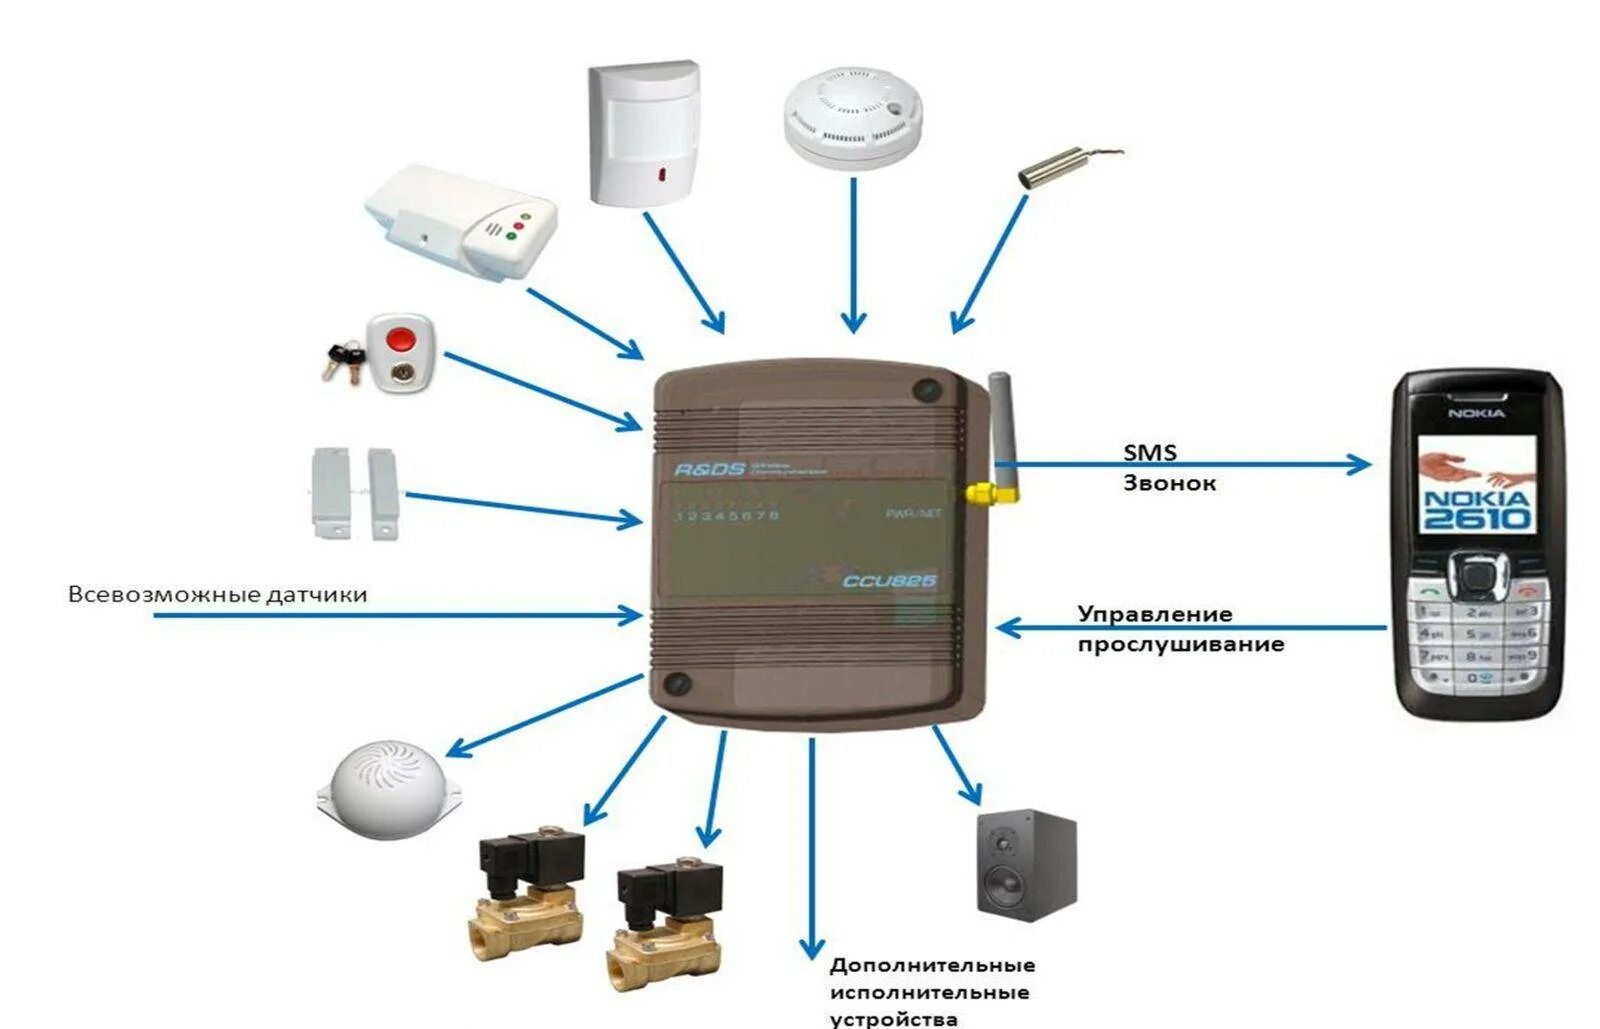 Сигнализация смс на телефон. Схема охранной сигнализации с GSM датчиком. Охранная сигнализация для дачи с сиреной с датчиком. GSM модуль для сигнализации. Схема работы автономная охранная сигнализация GSM.